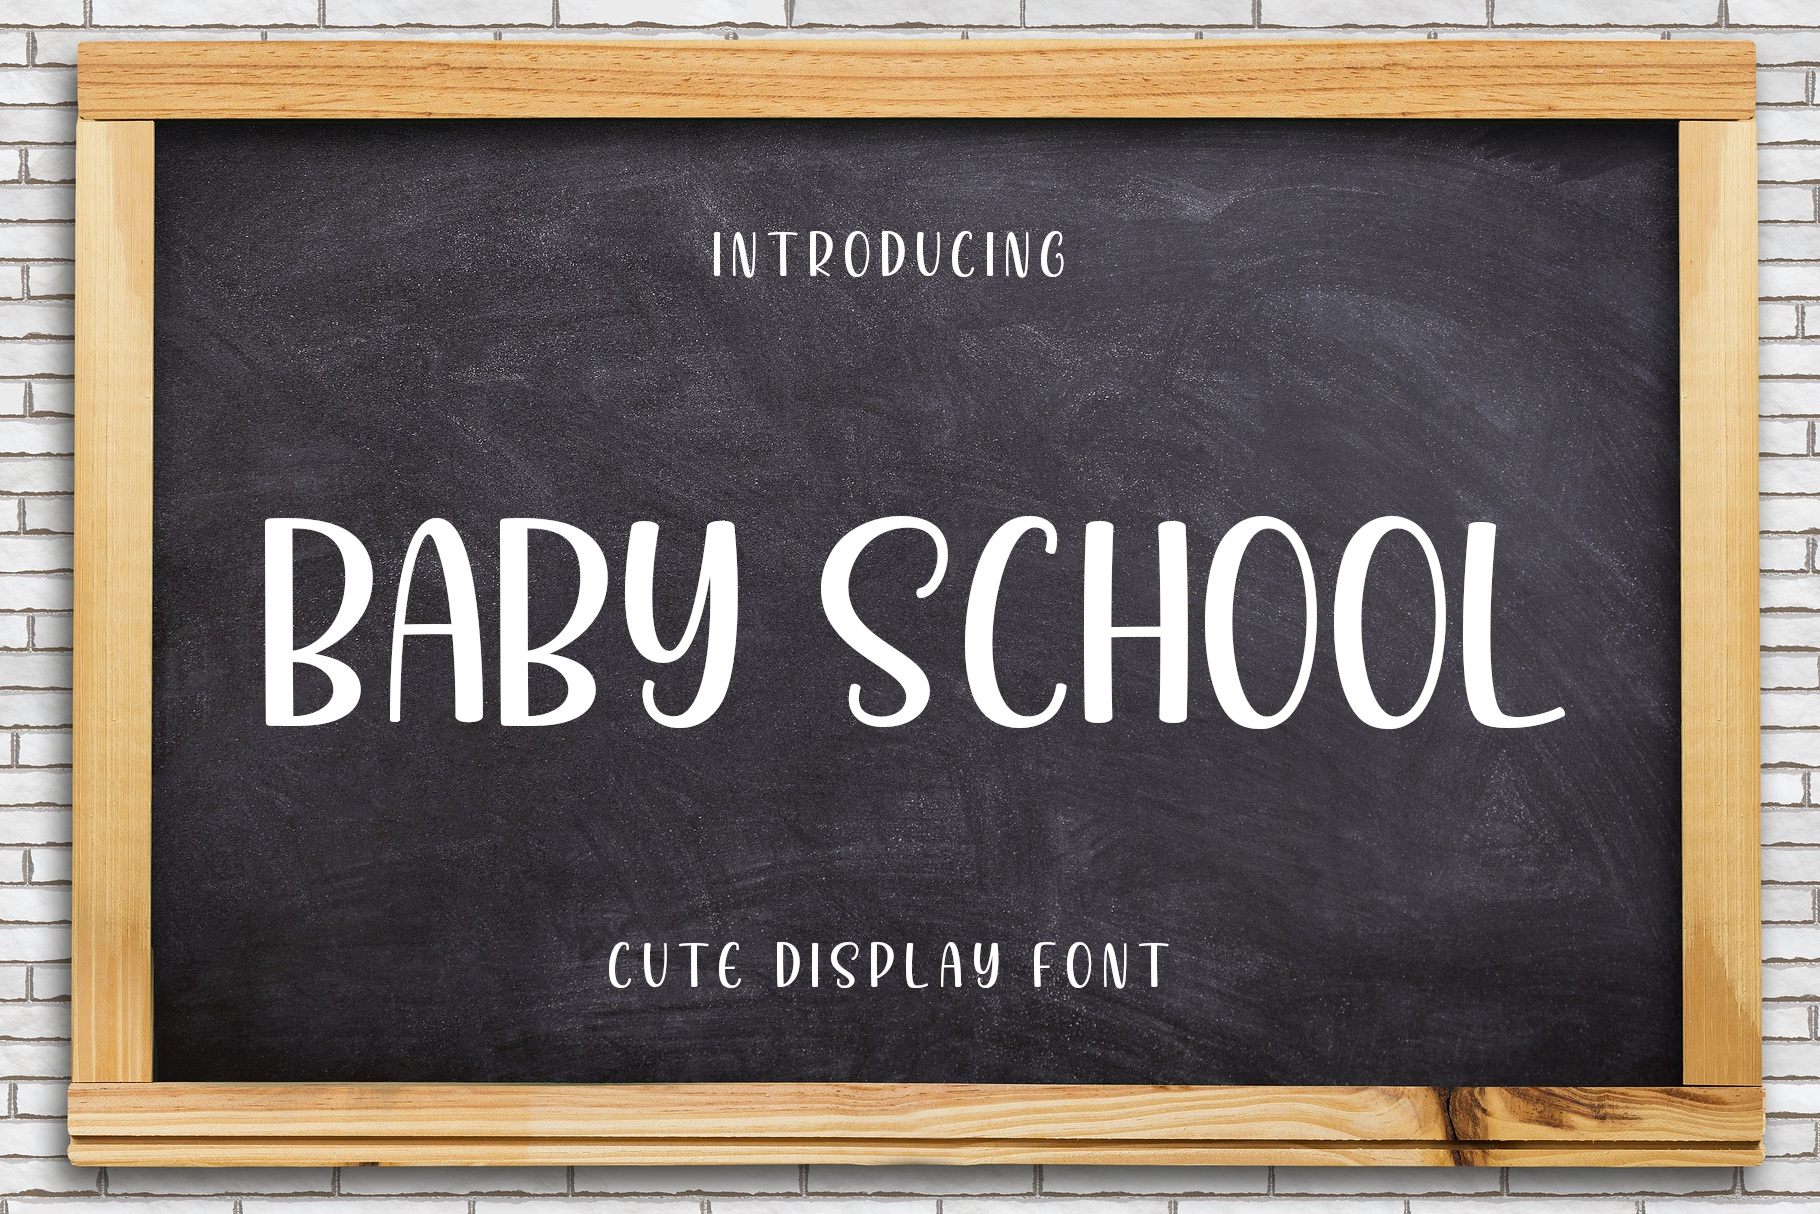 Baby School